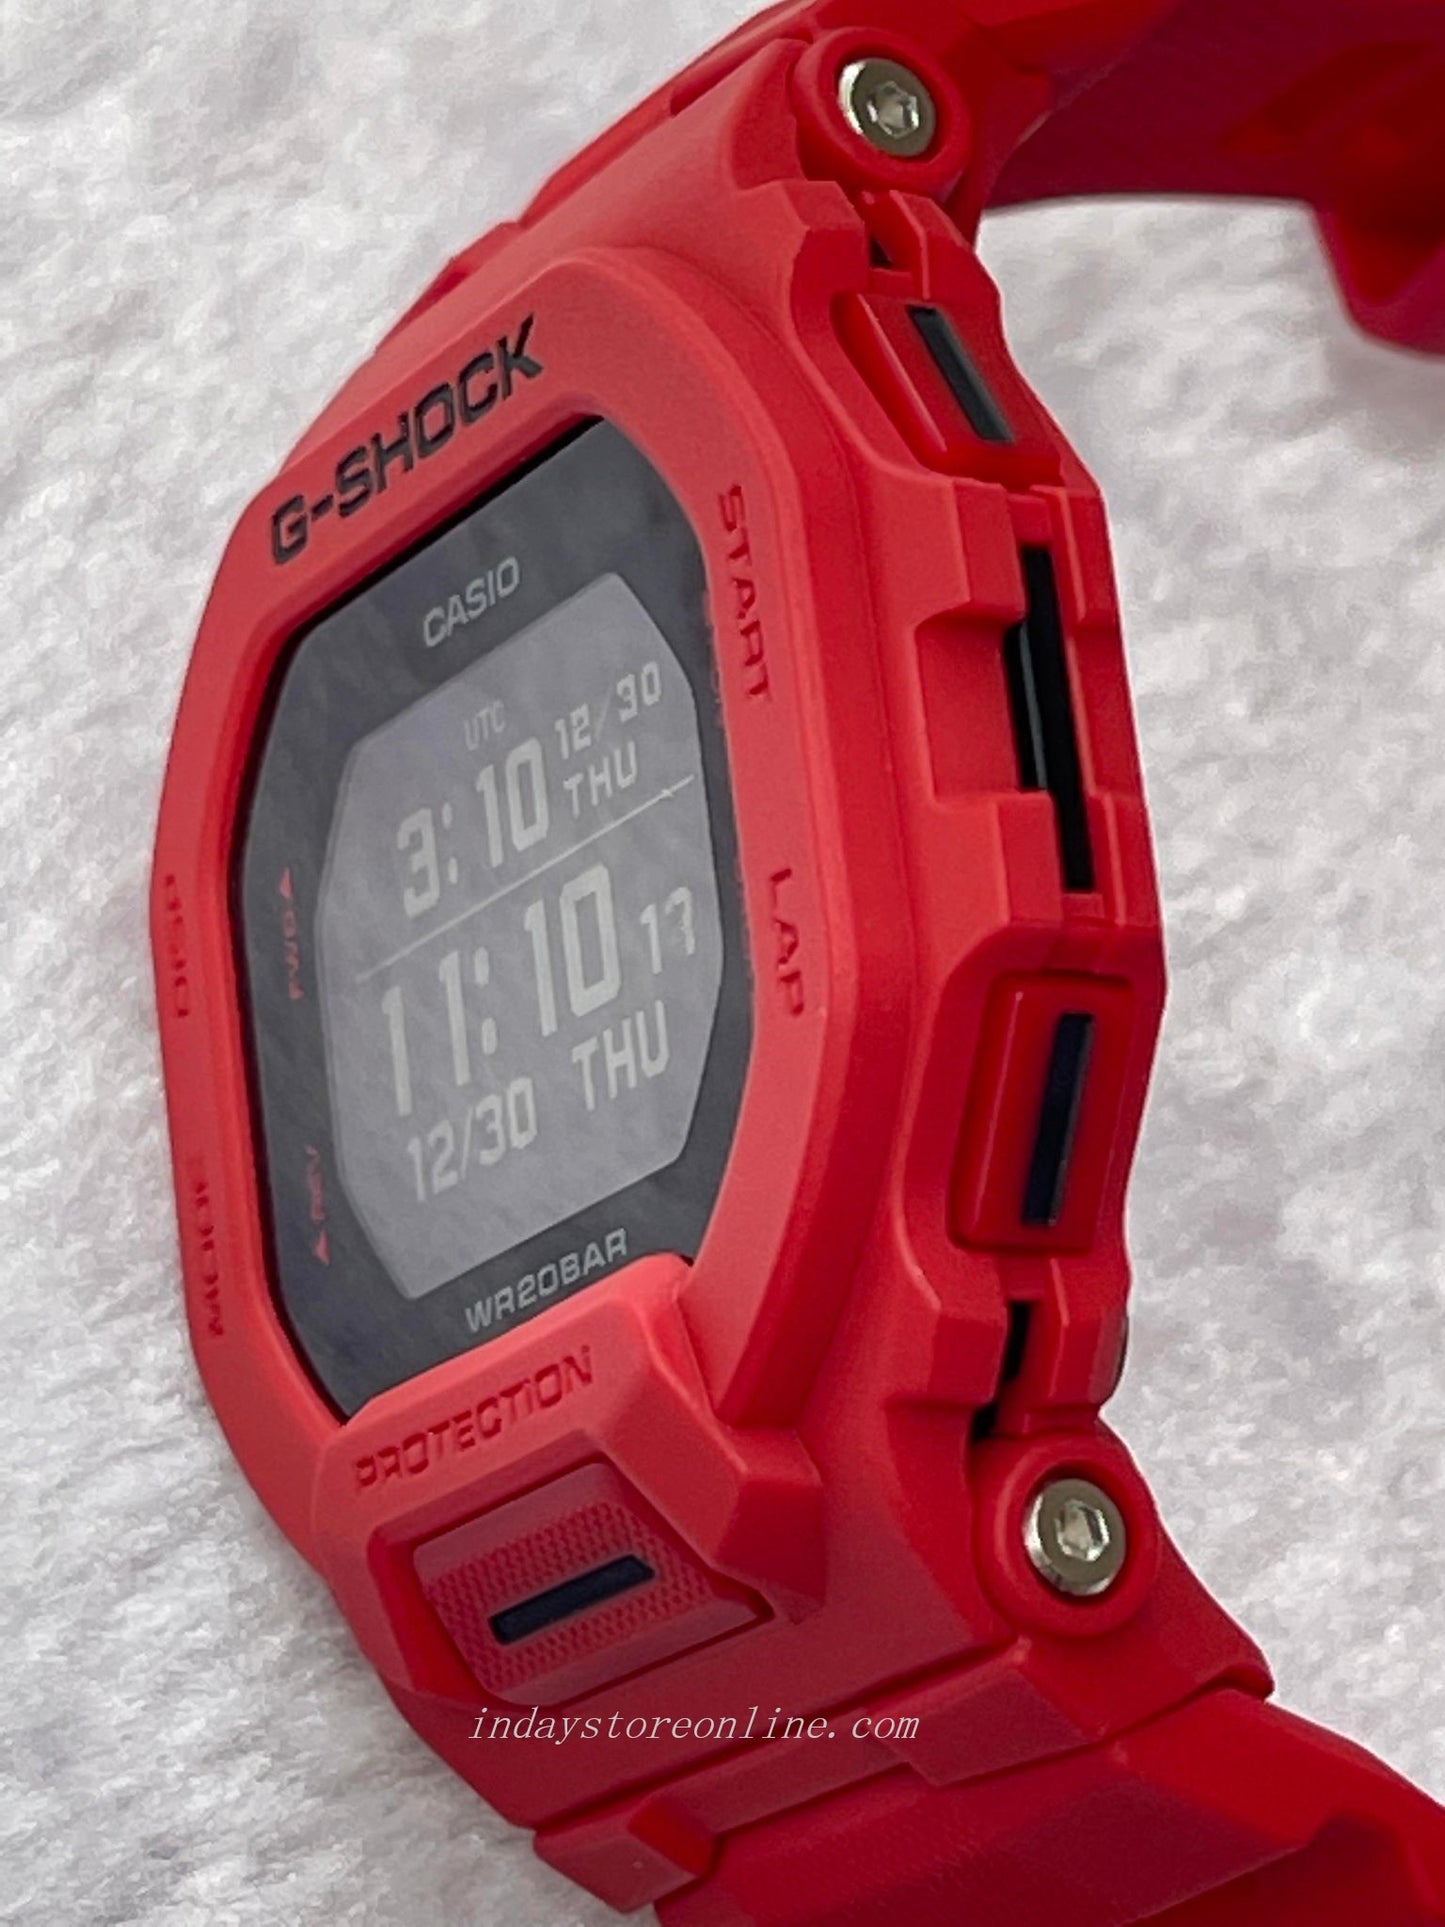 Casio G-Shock Men's Watch GBD-200RD-4